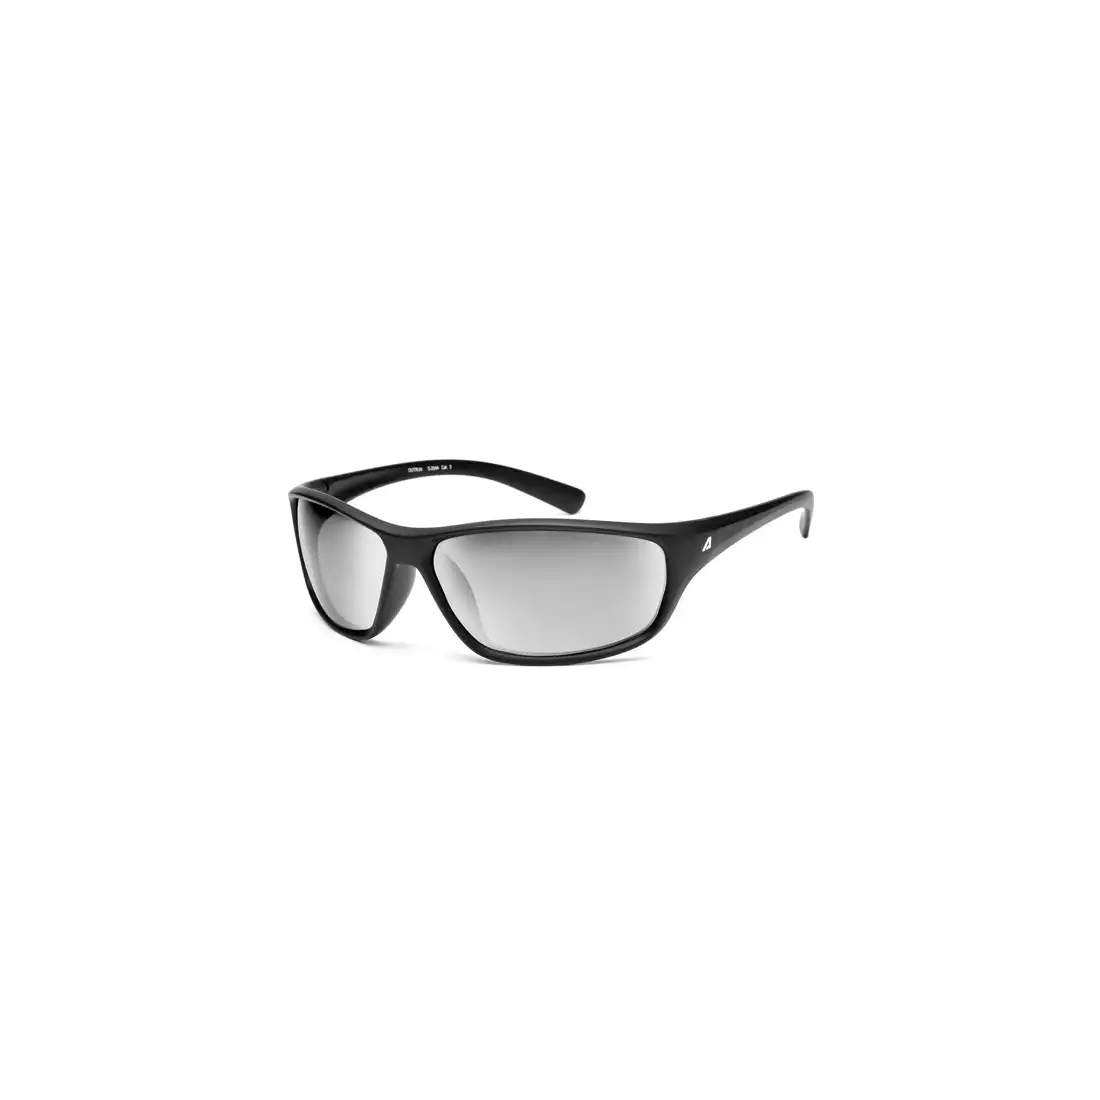 ARCTICA okulary sportowe, S 204A